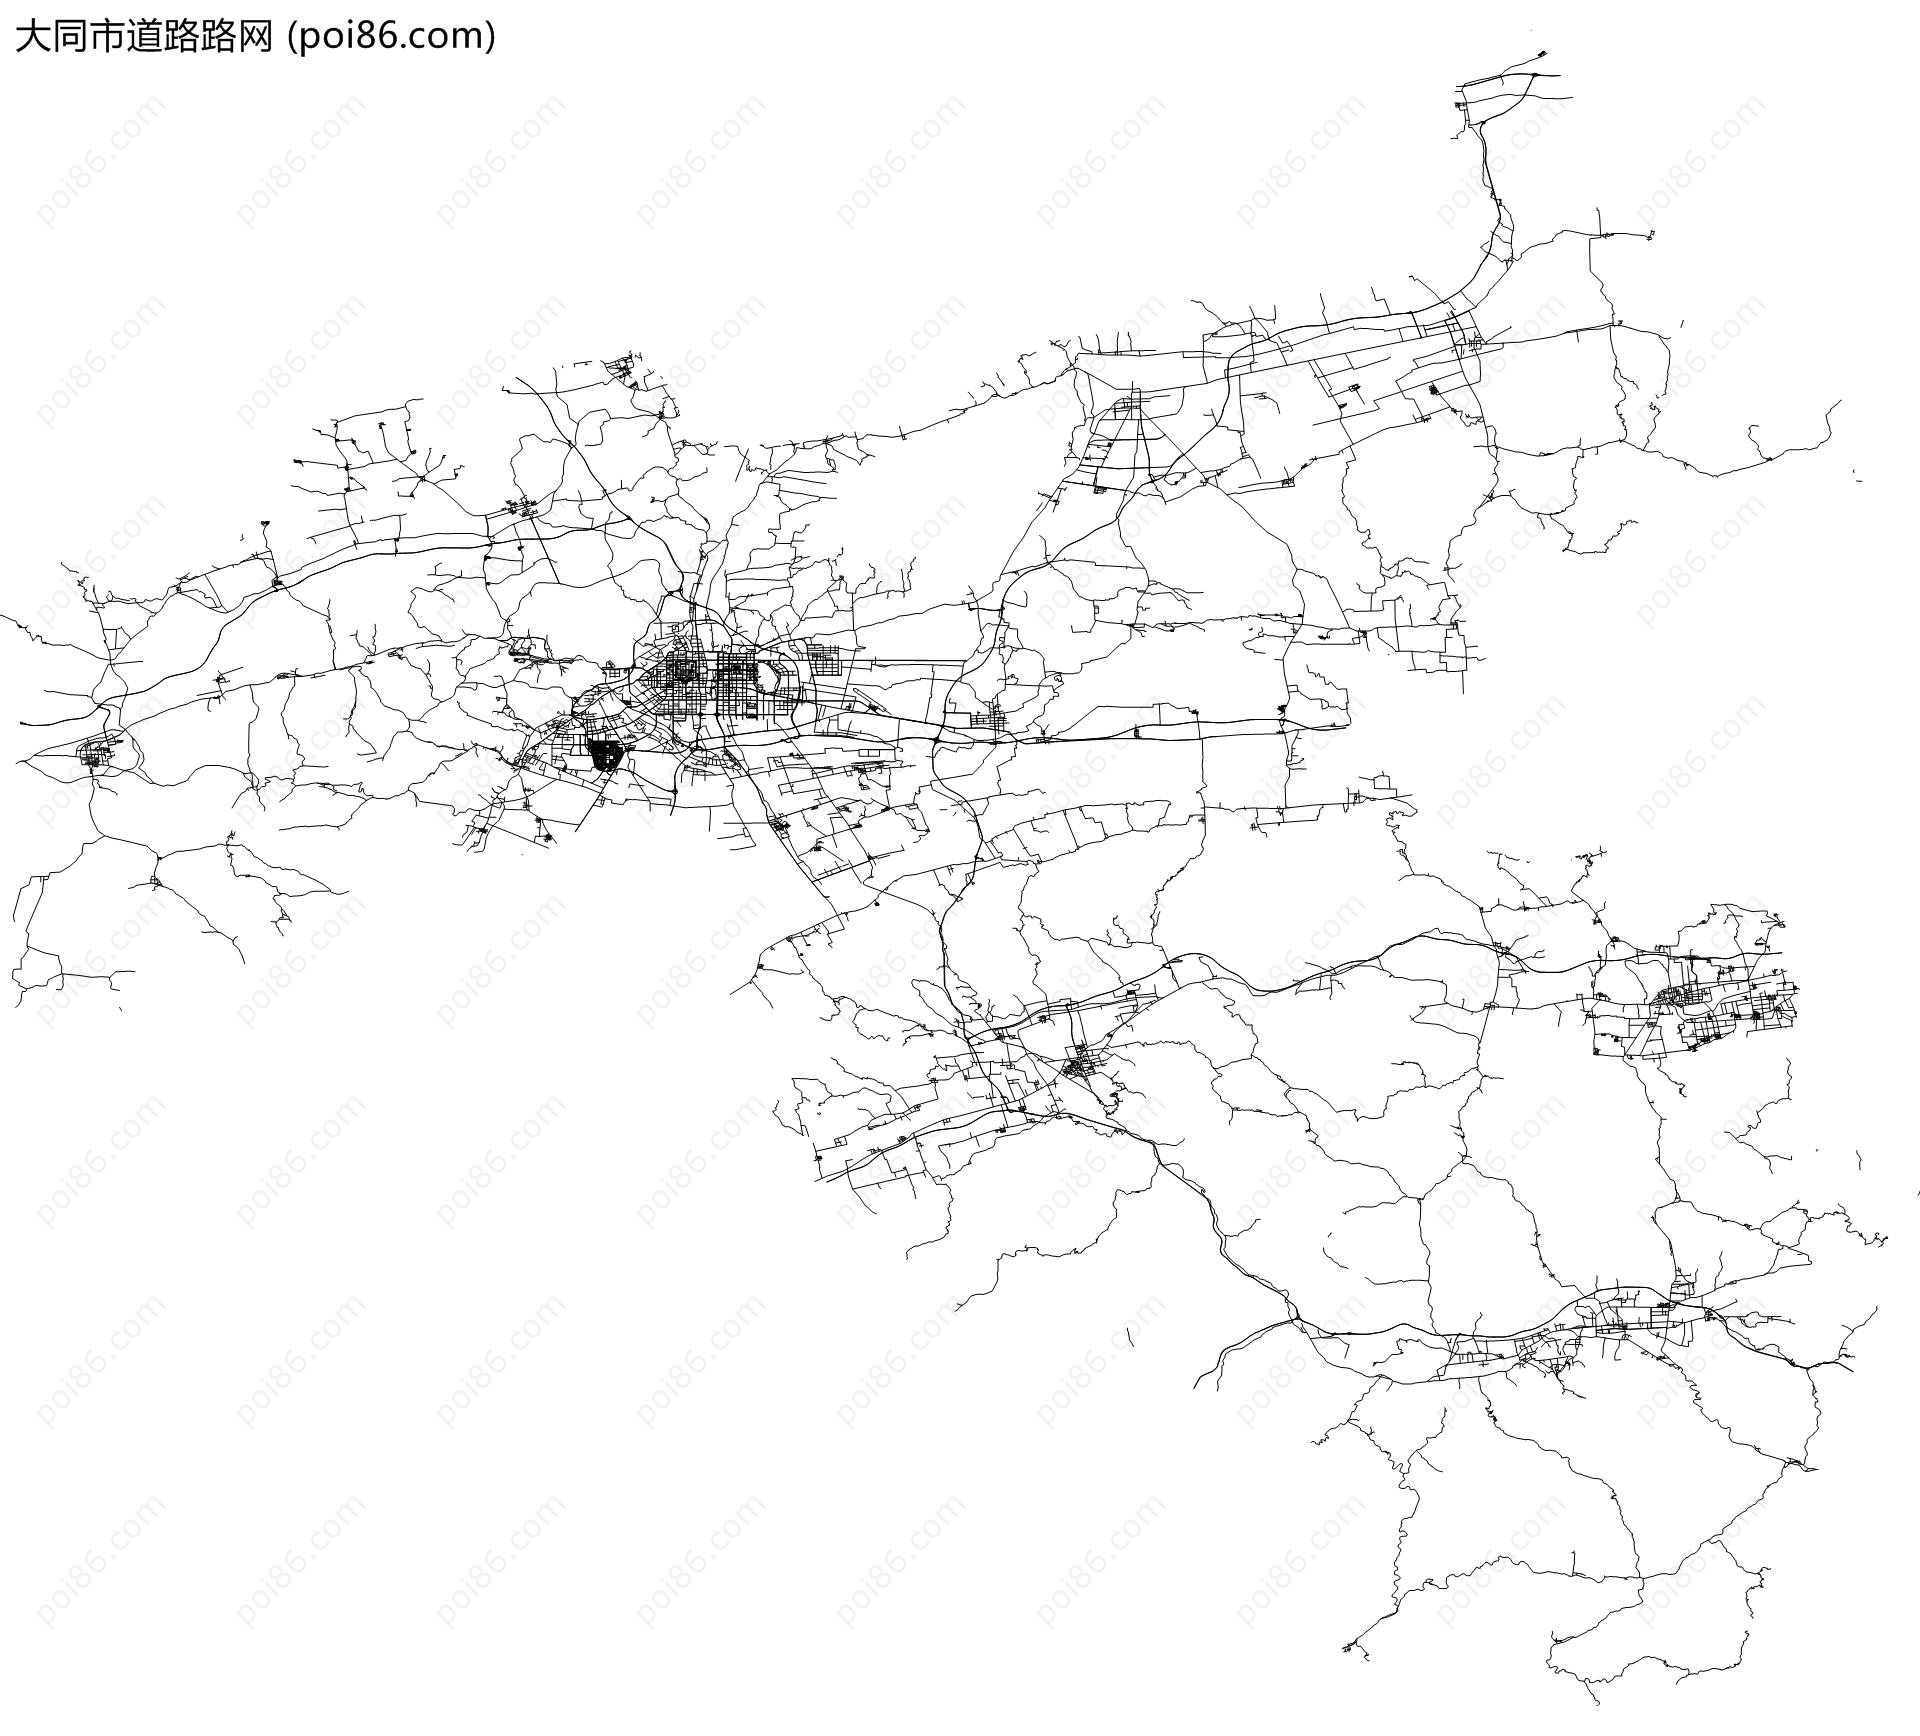 大同市道路路网地图